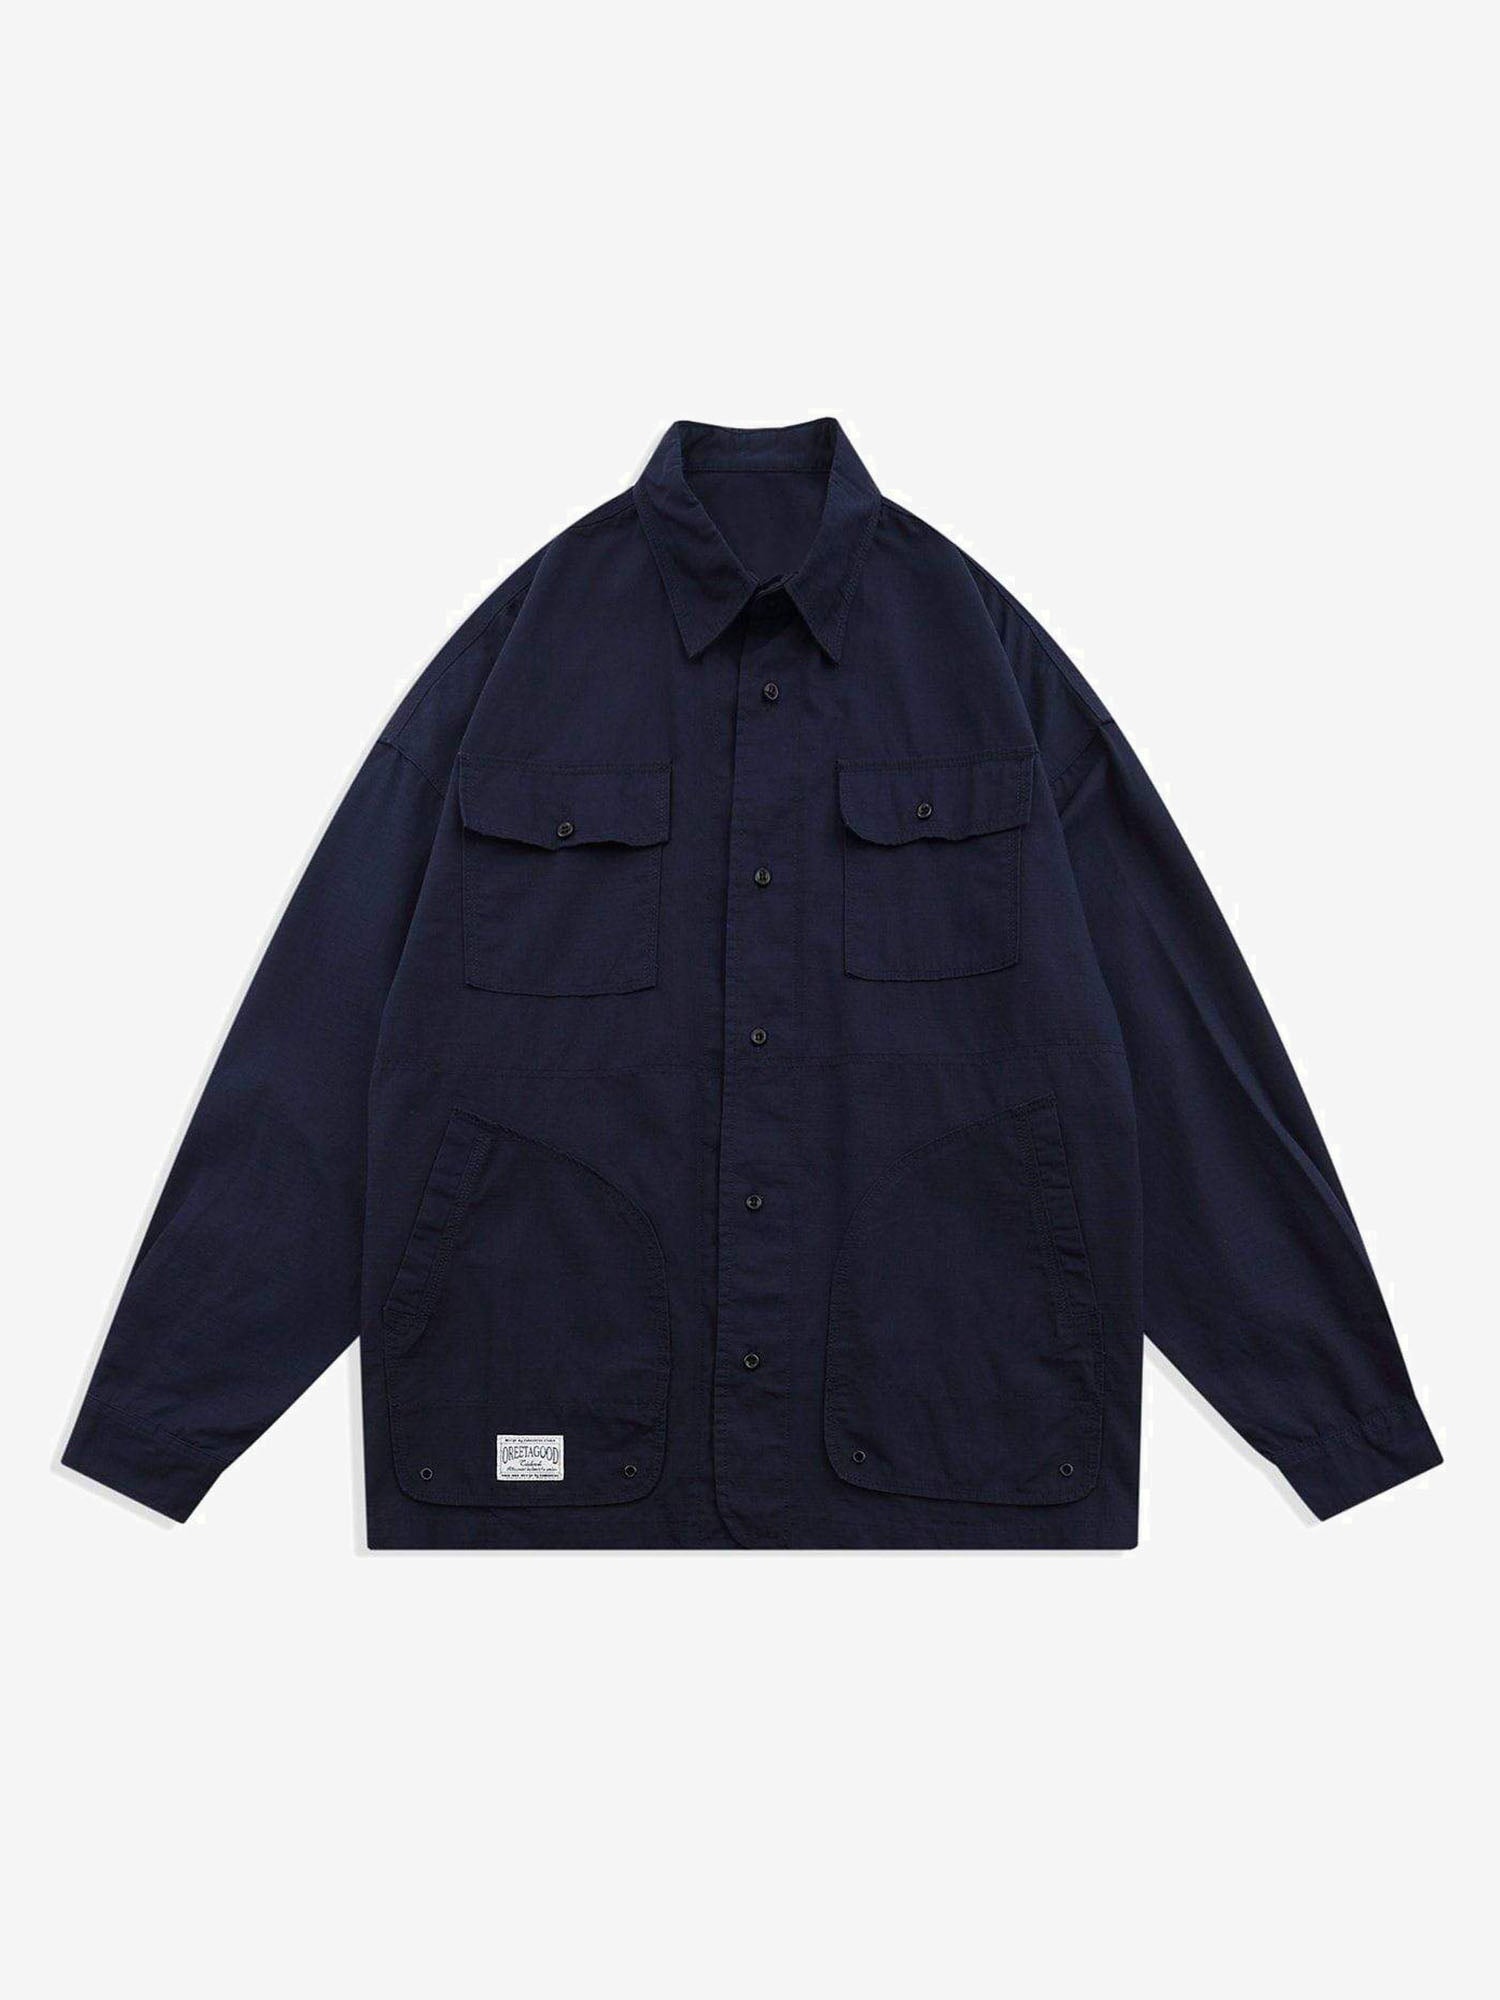 JUSTNOTAG  Multi-Pocket Plain Long Regular Sleeve Shirt